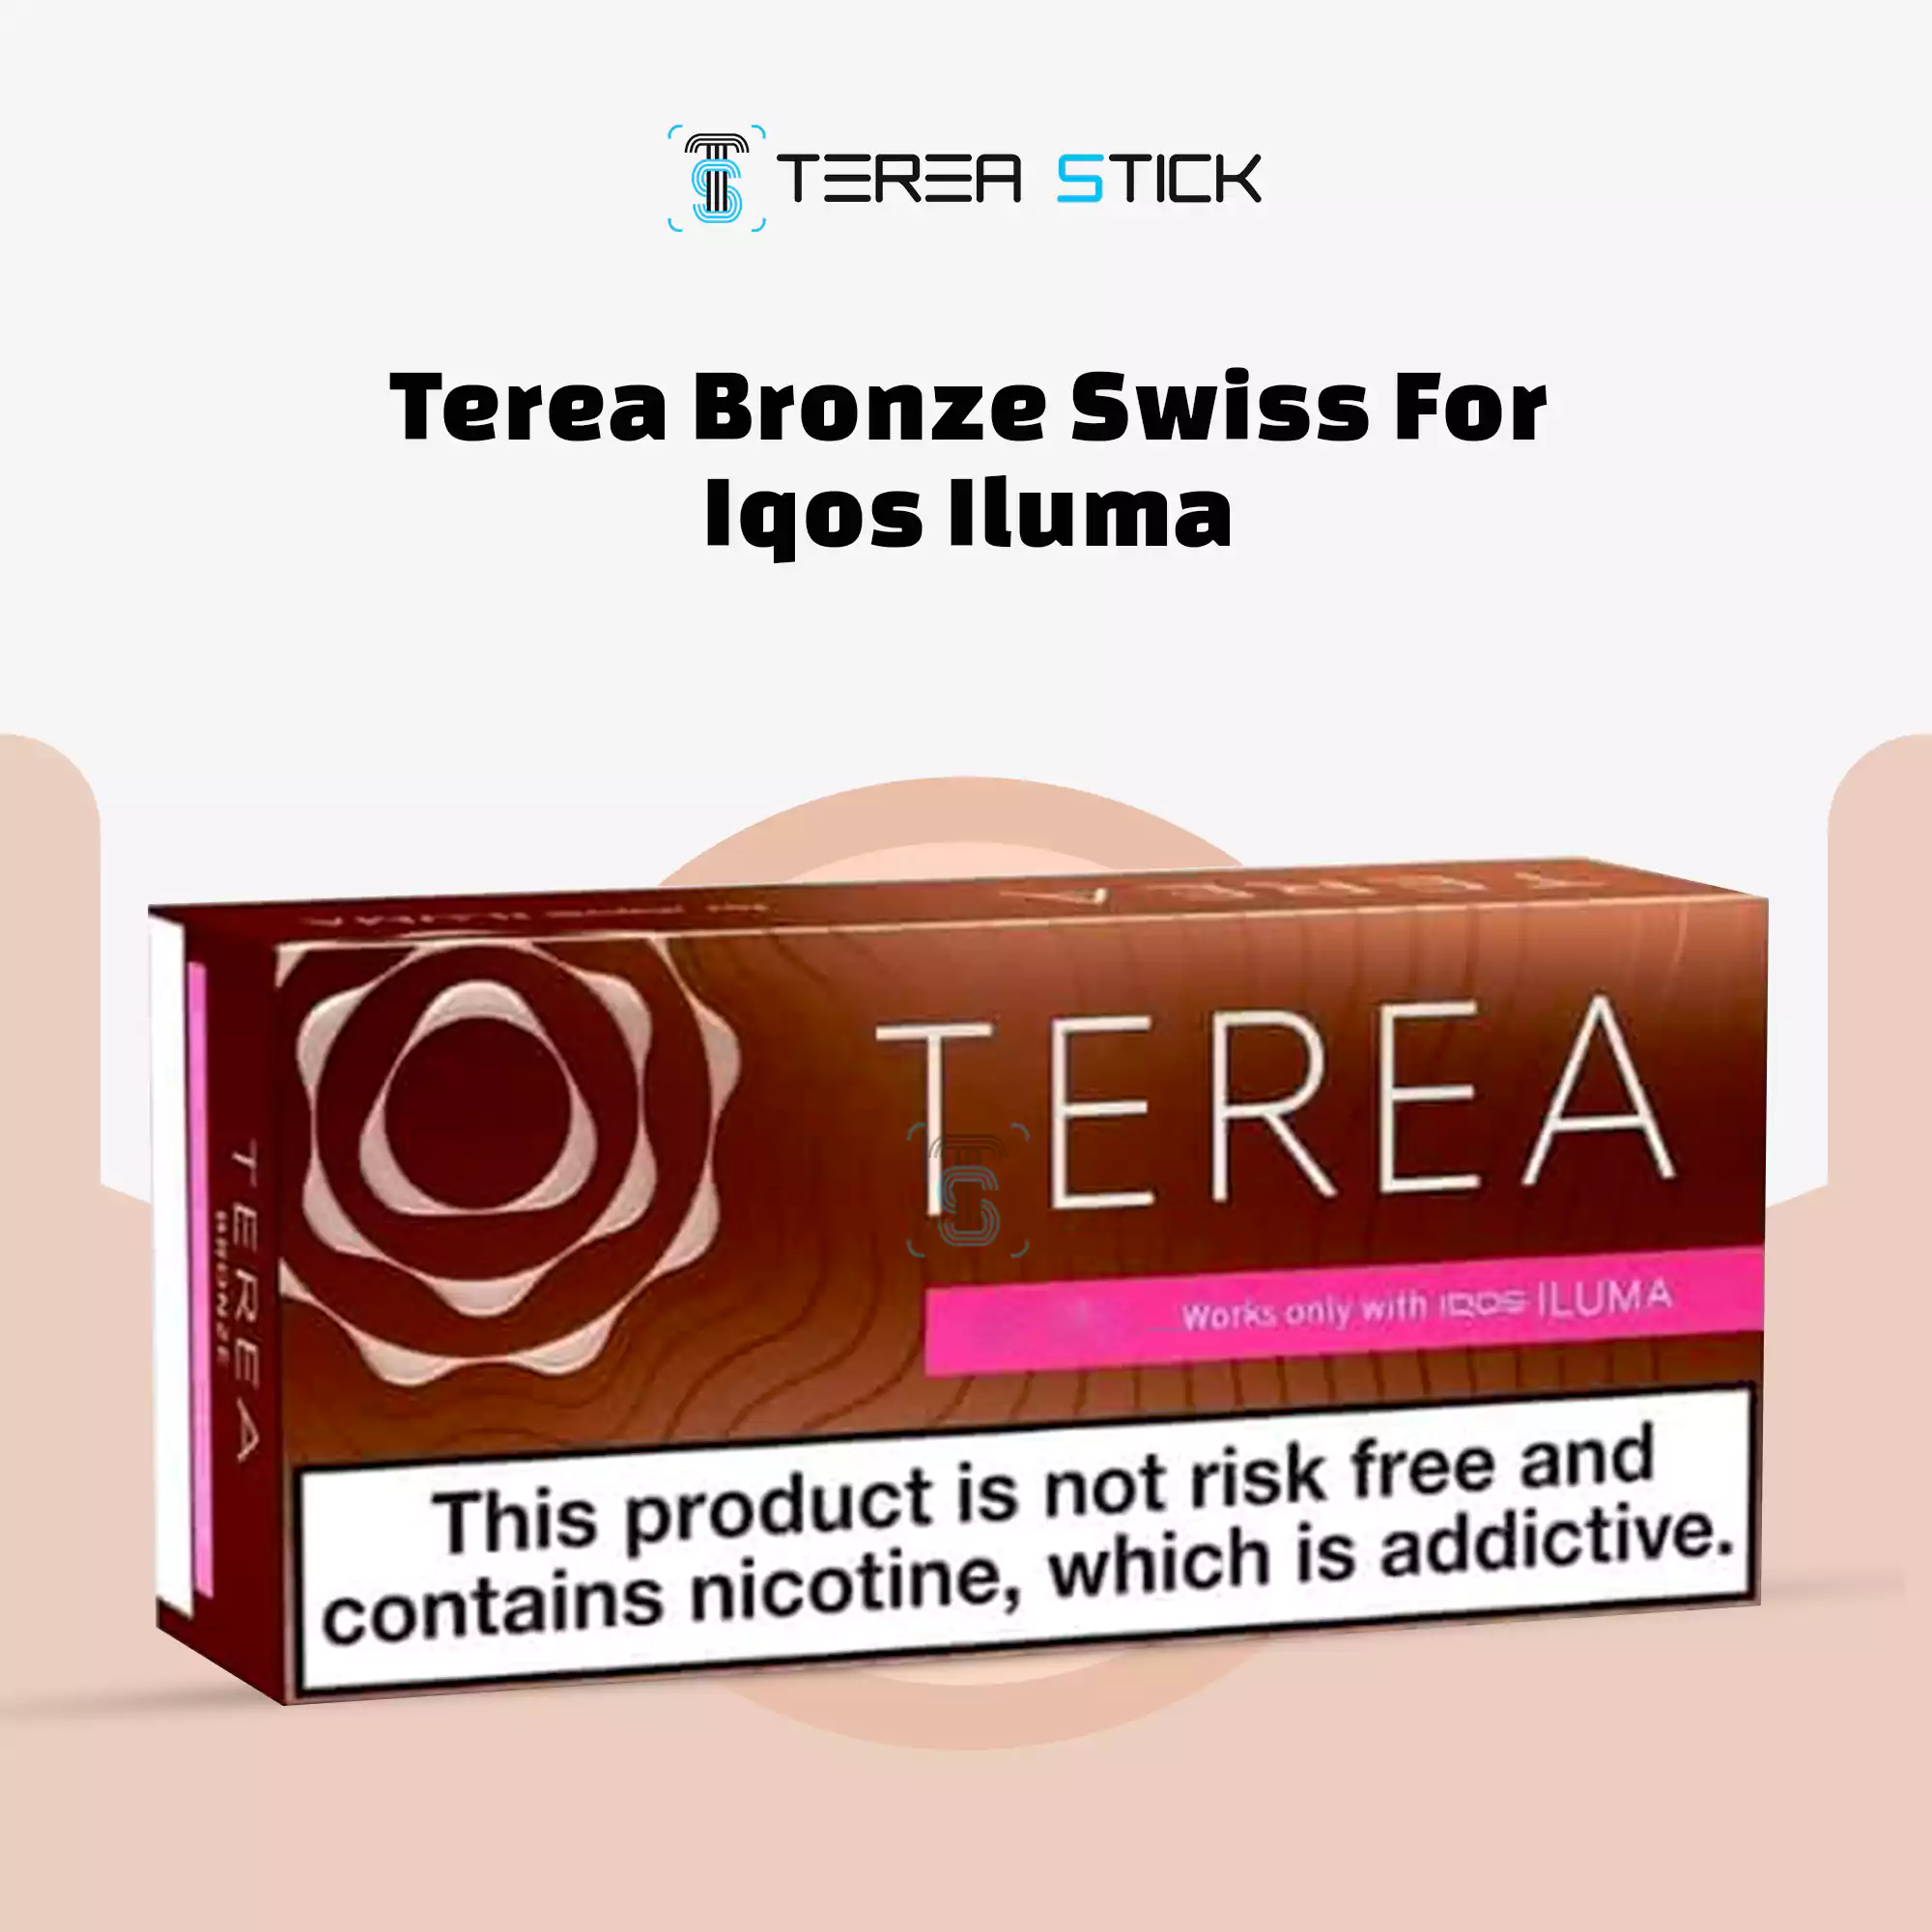 How to use TEREA Sticks with the IQOS ILUMA 